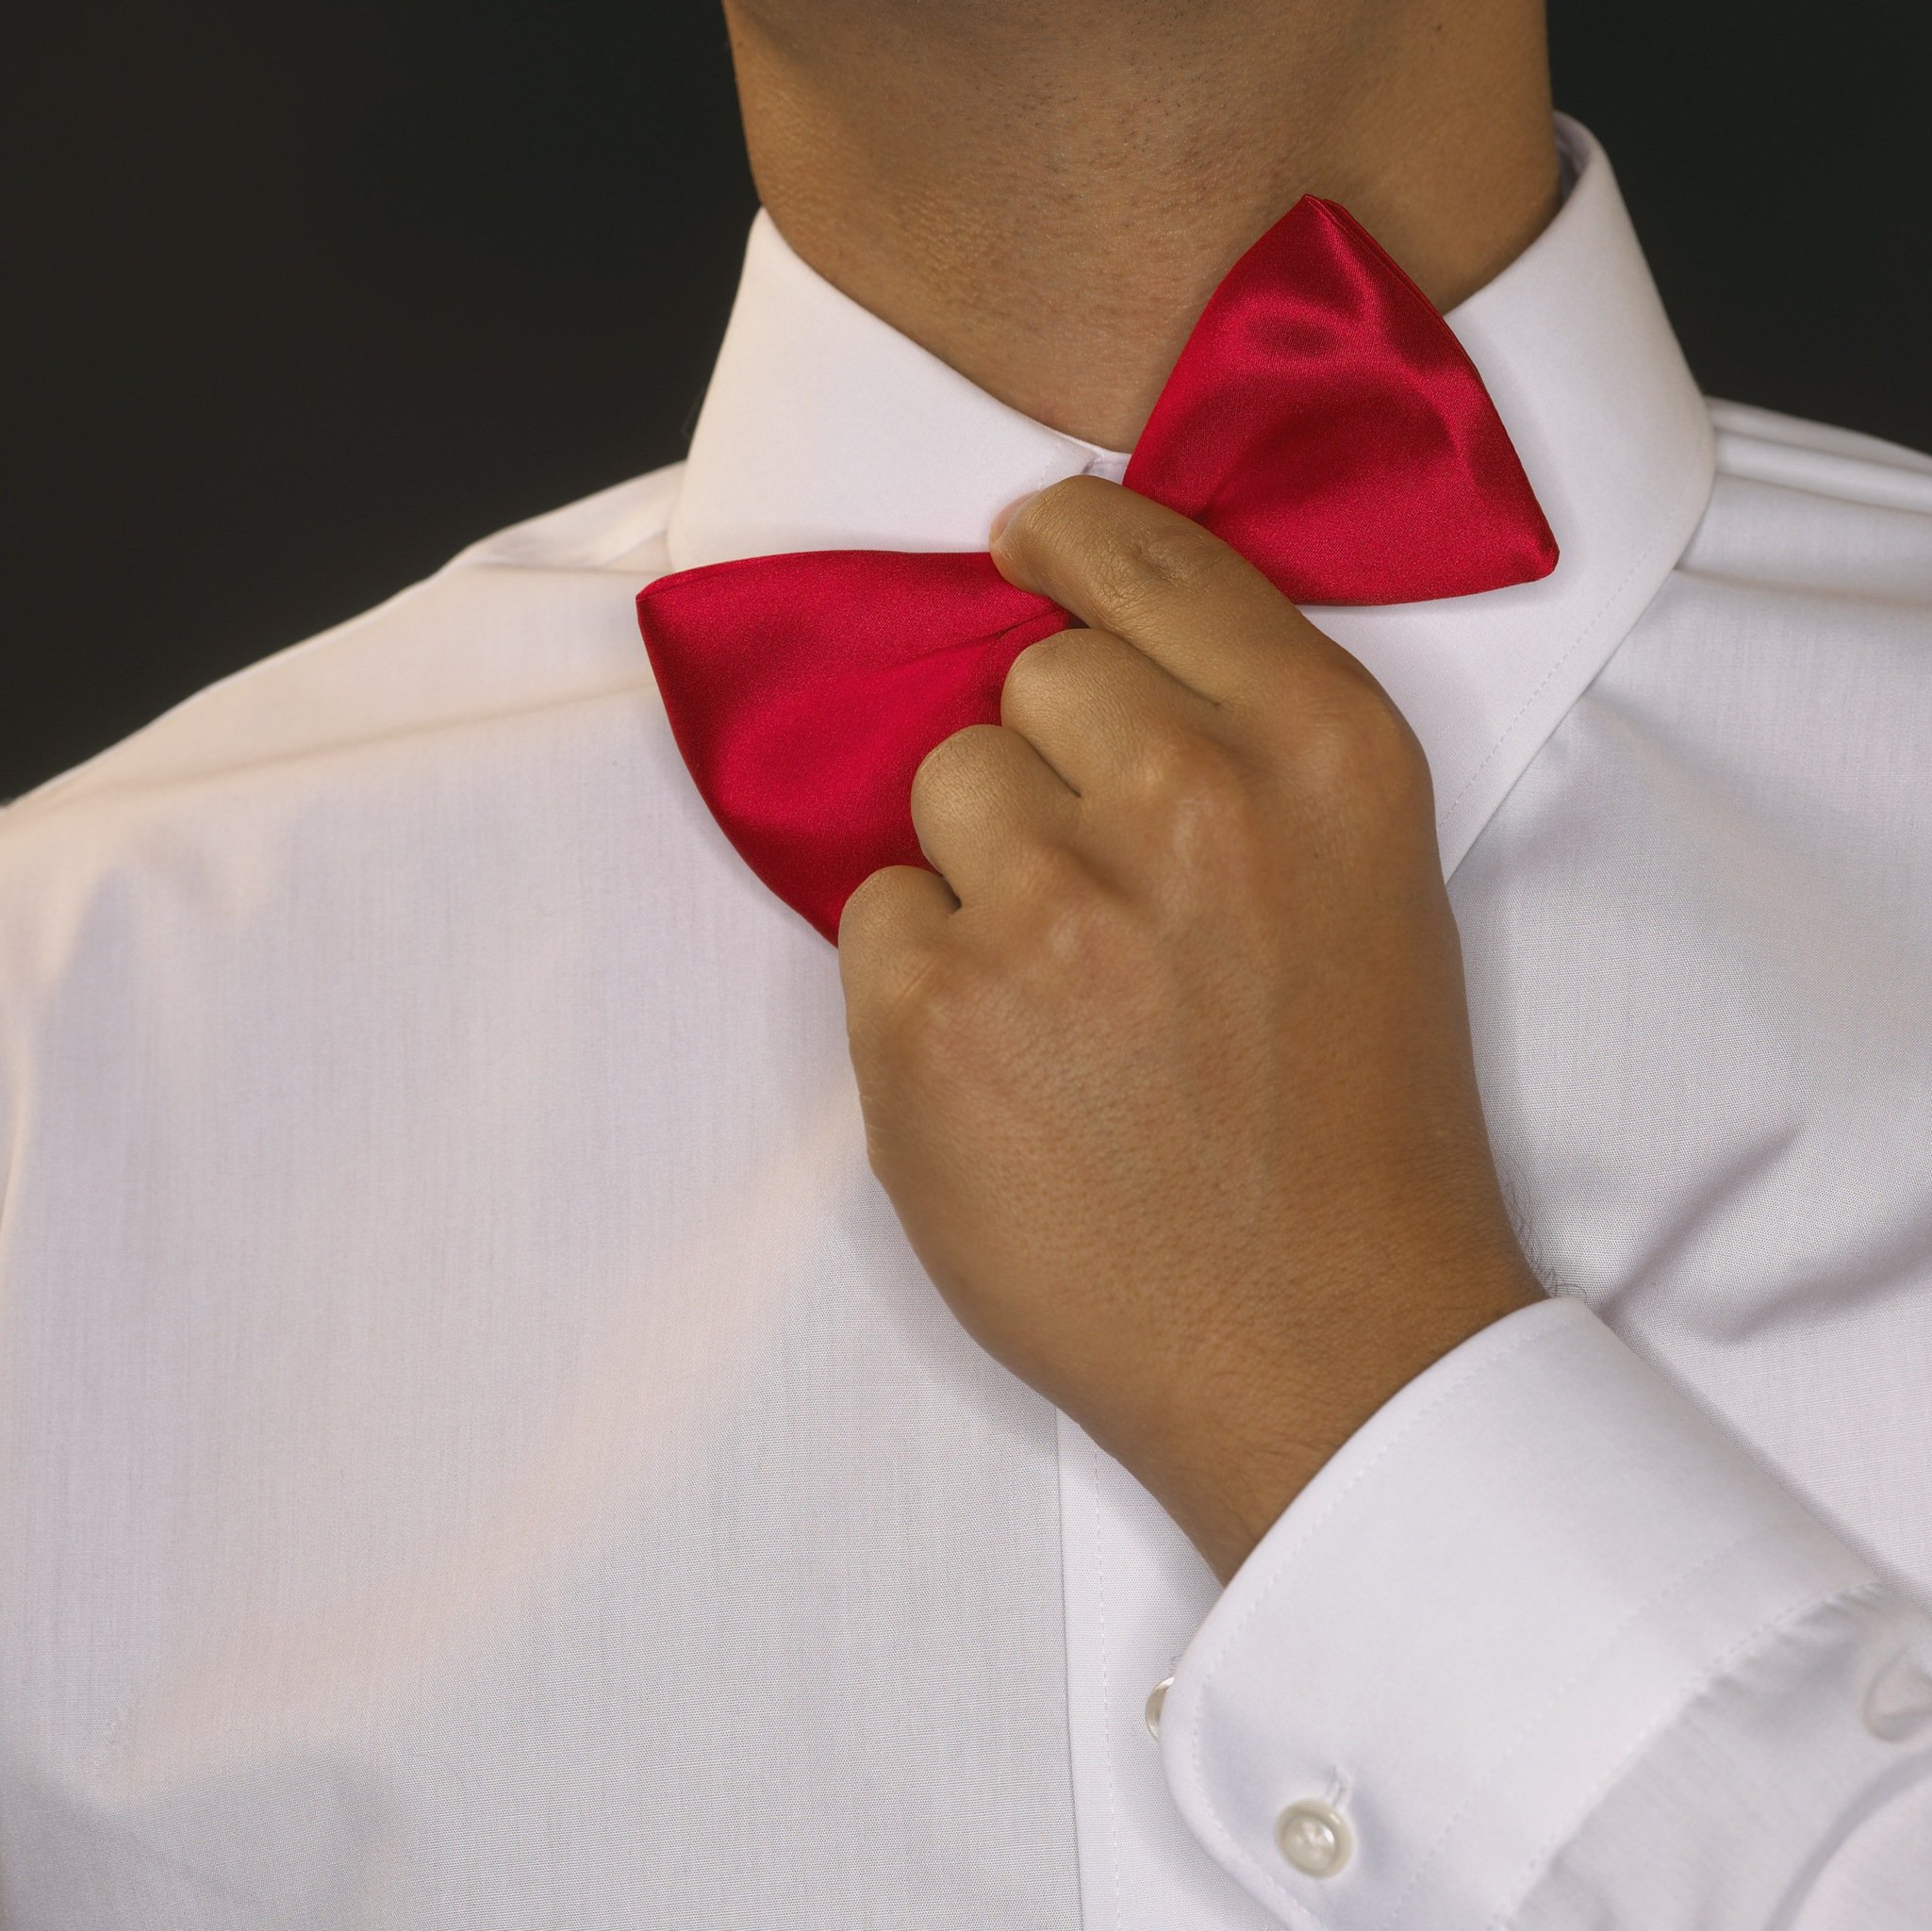 Рубашка и красный галстук